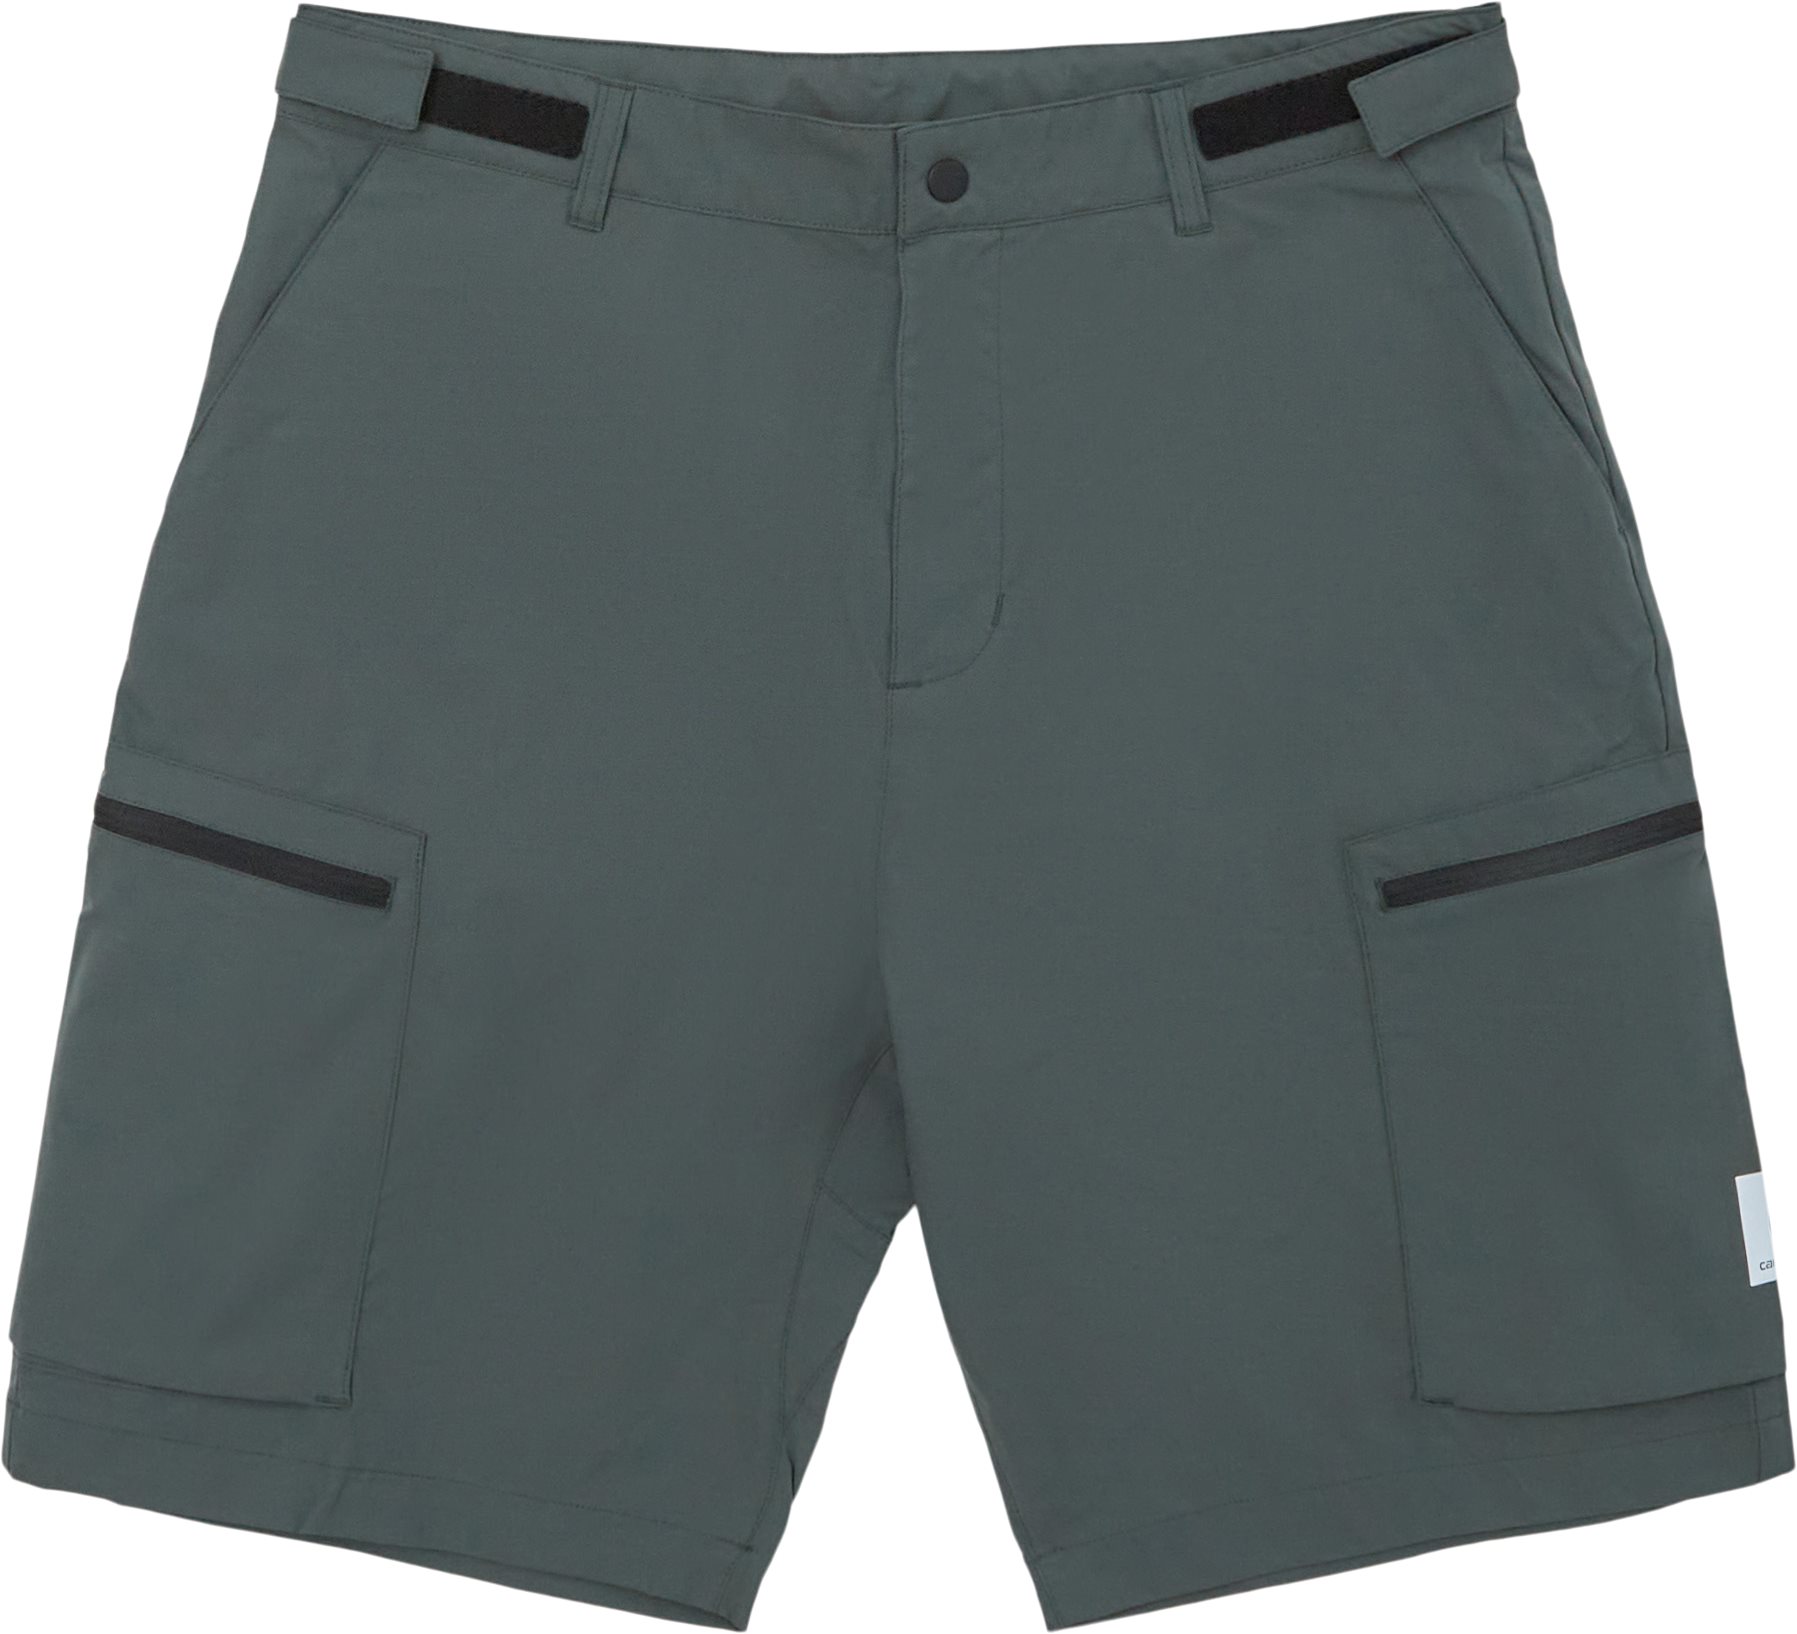 Hewitt Short I030016 - Shorts - Regular fit - Green